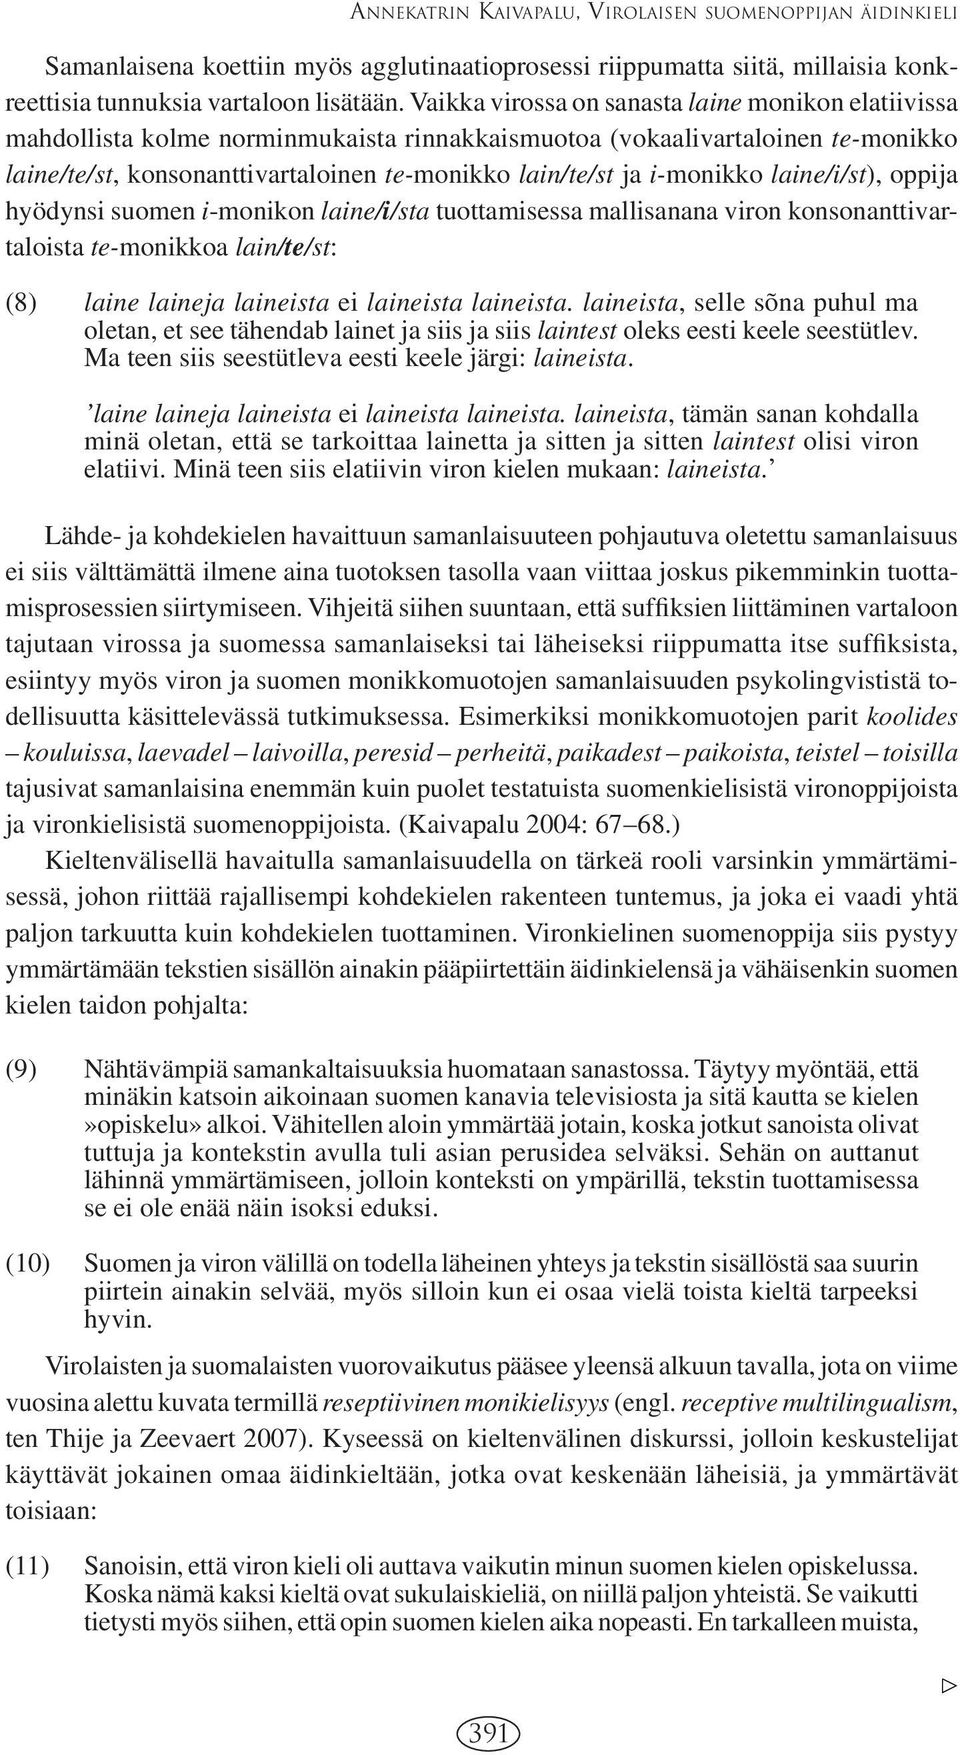 i-monikko laine/i/st), oppija hyödynsi suomen i-monikon laine/i/sta tuottamisessa mallisanana viron konsonanttivartaloista te-monikkoa lain/te/st: (8) laine laineja laineista ei laineista laineista.